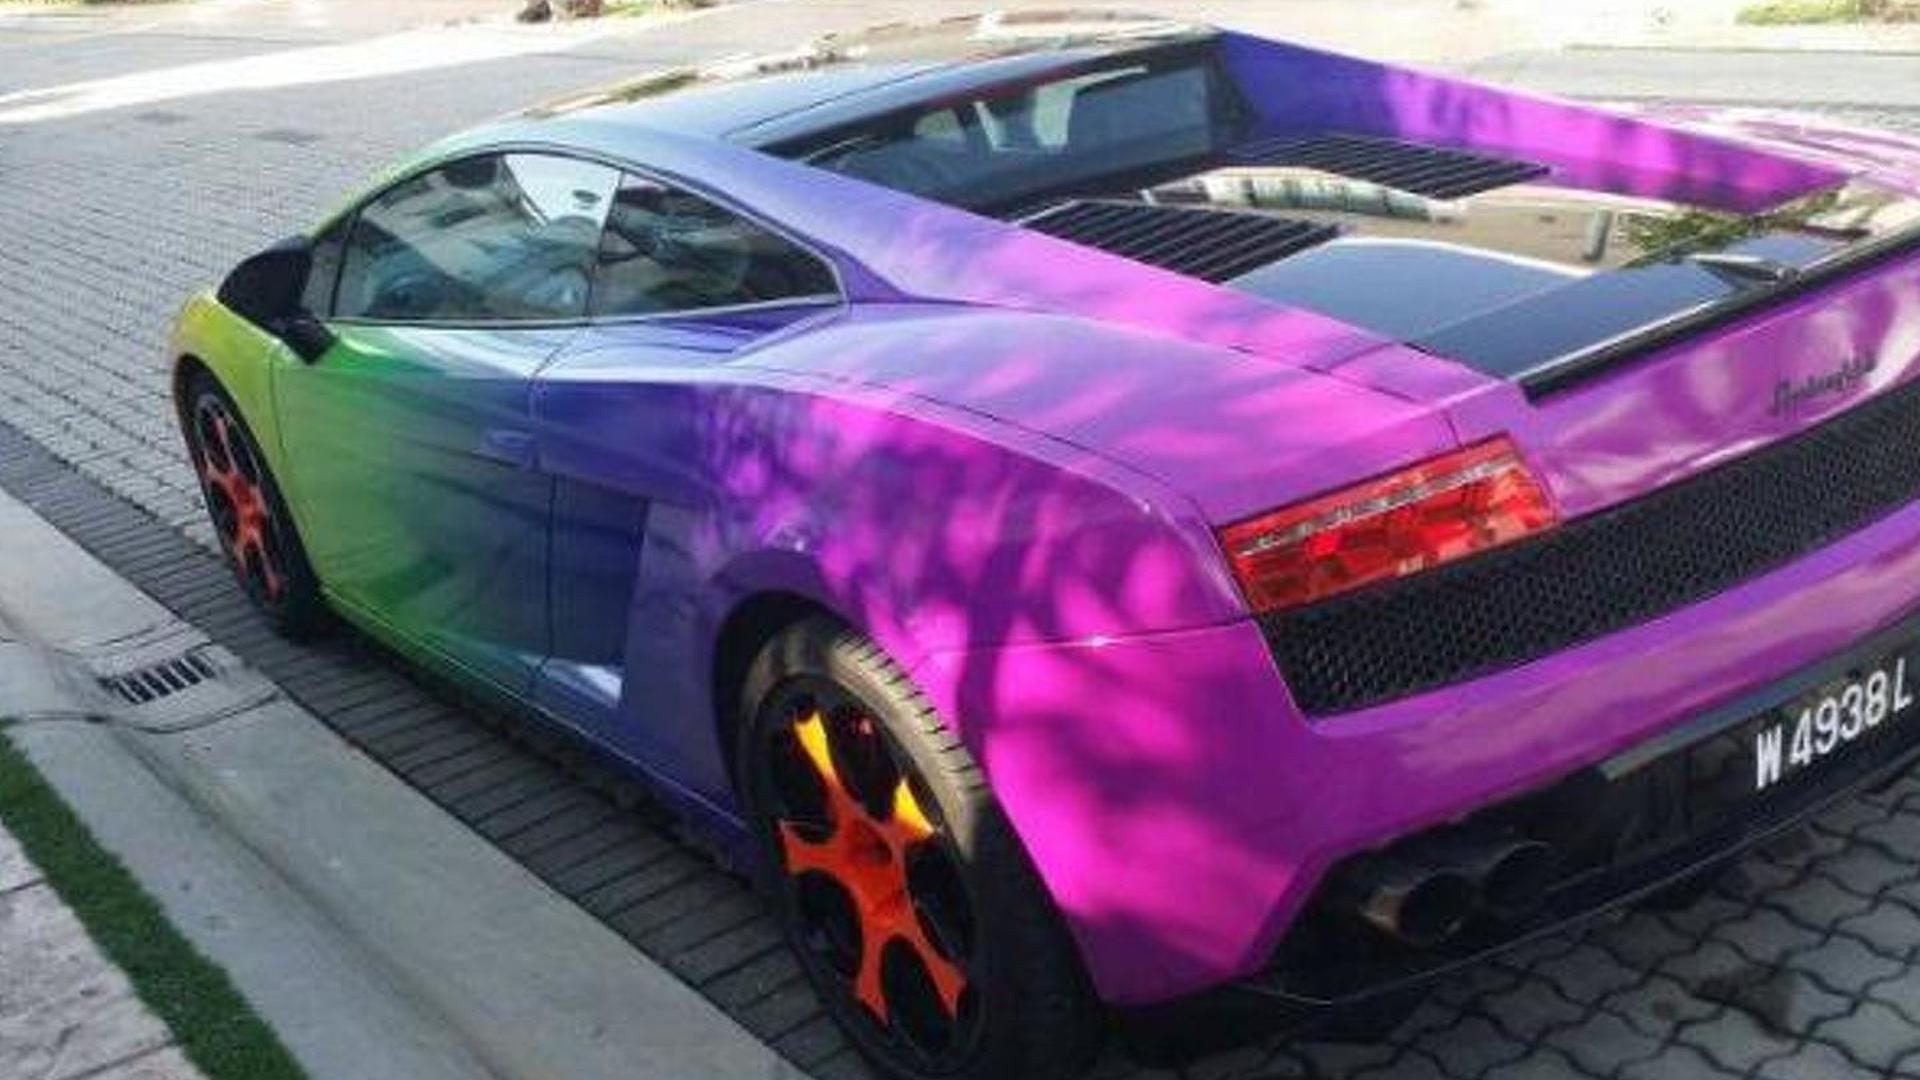 Rainbow Wrapped Lamborghini Gallardo In Malaysia